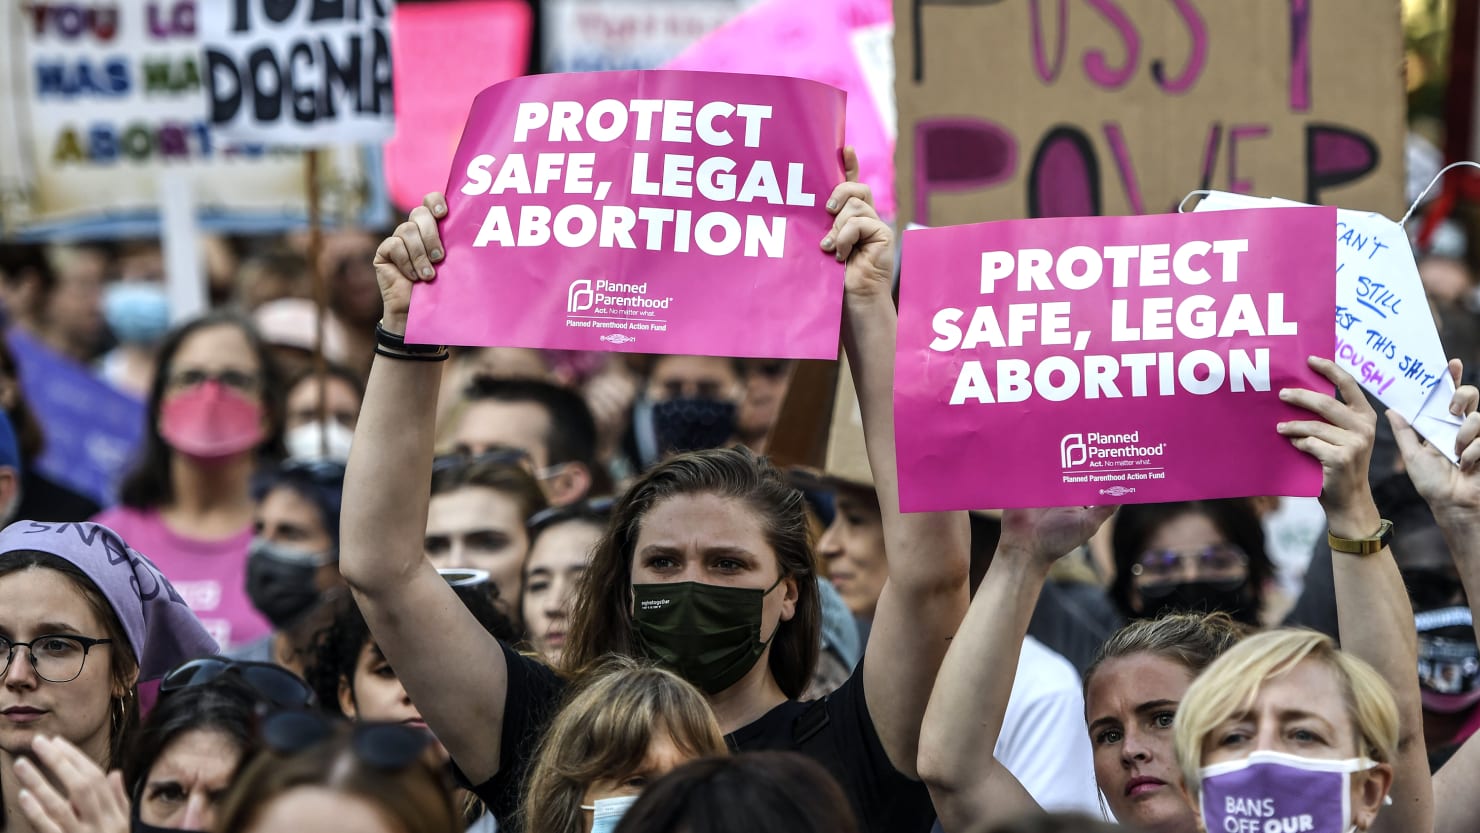 Los demócratas ven una oportunidad política en el desastre del aborto que se avecina